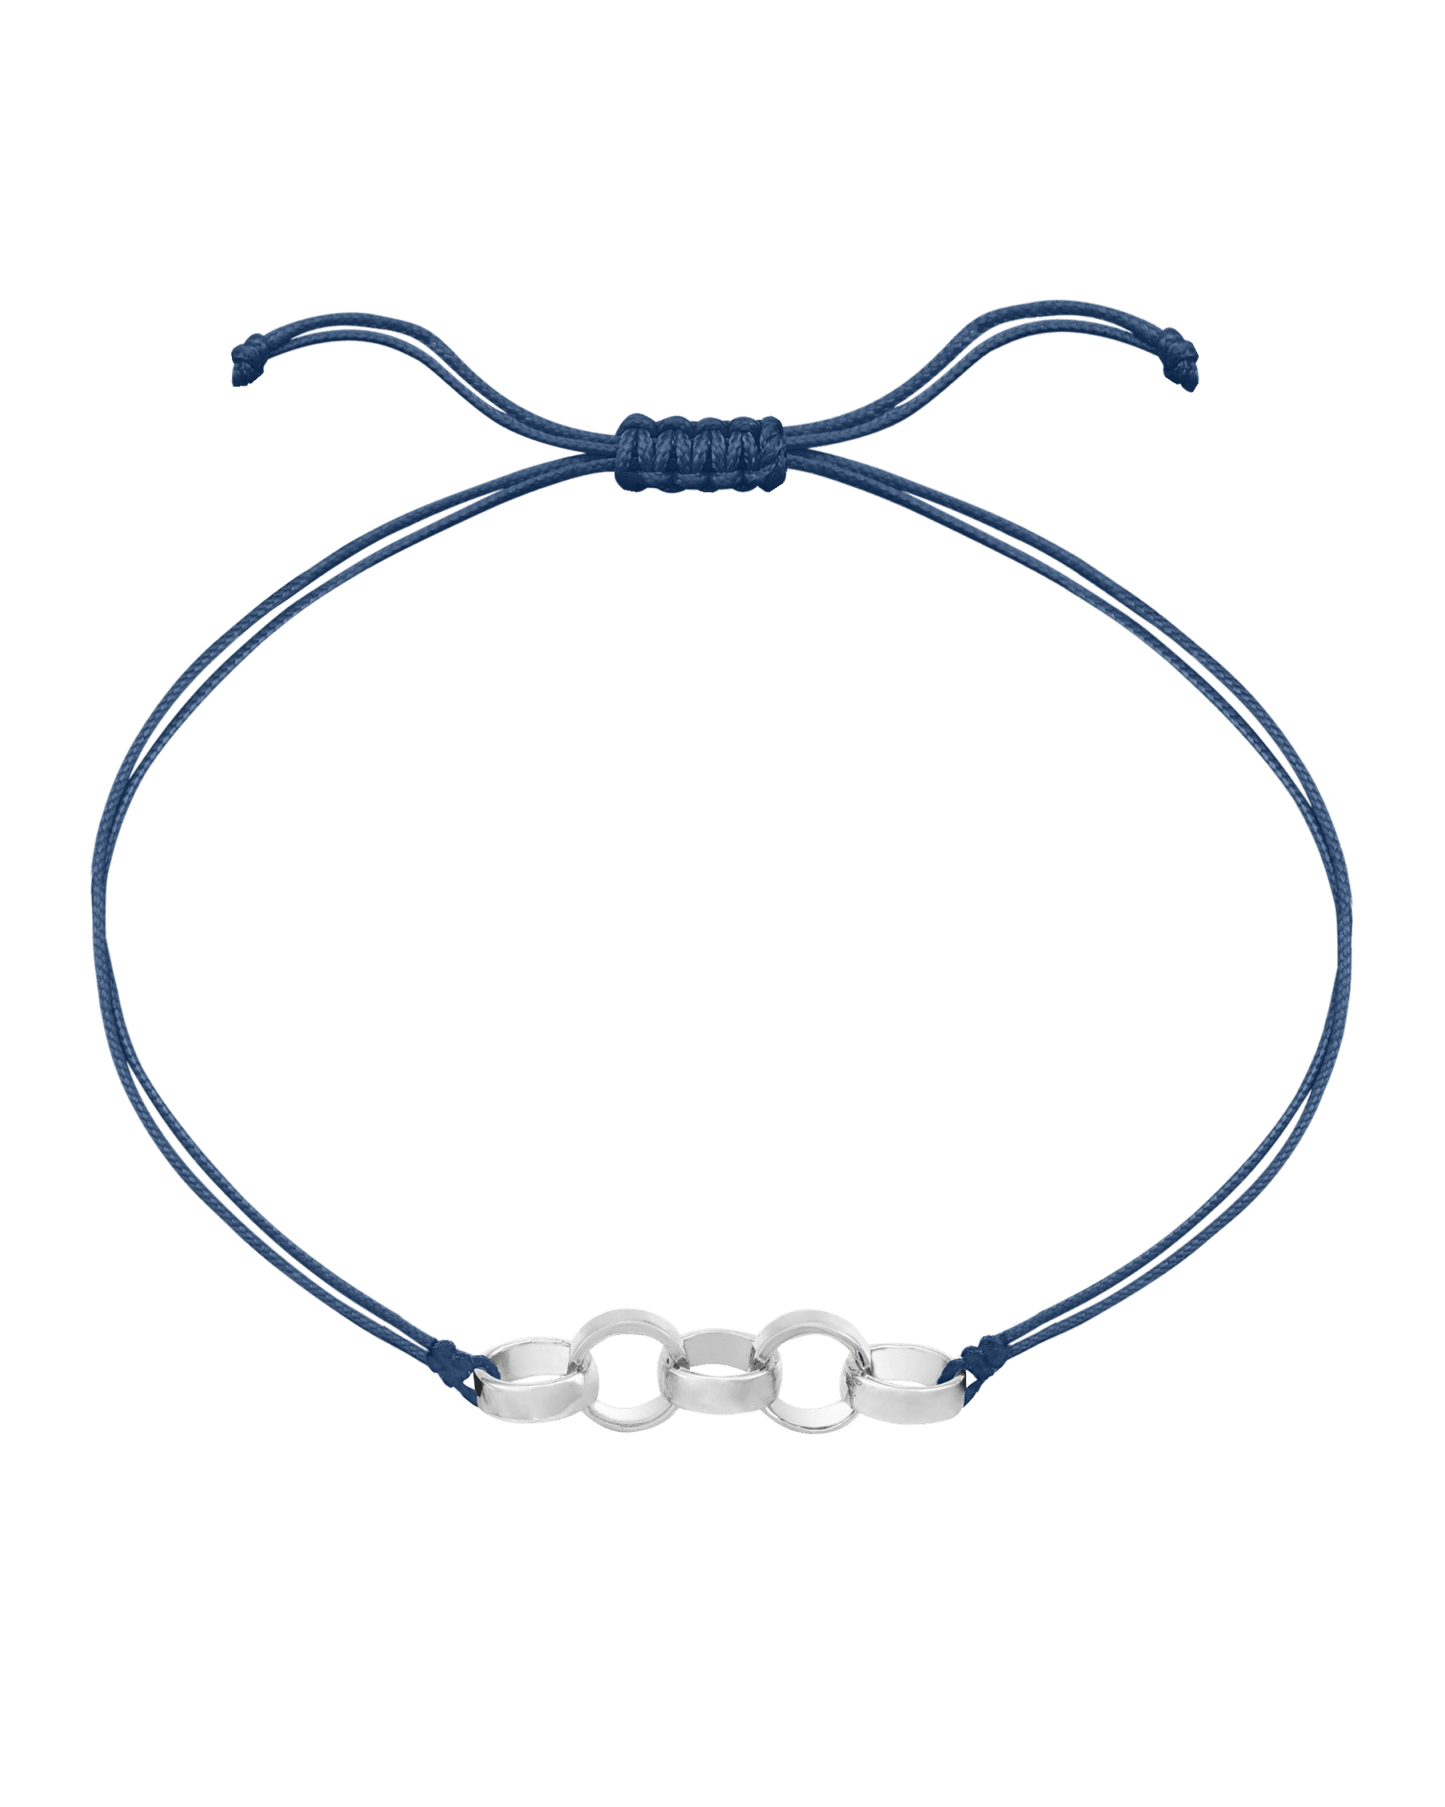 Engravable Links of Love - 925 Sterling Silver Bracelets magal-dev 5 Indigo 